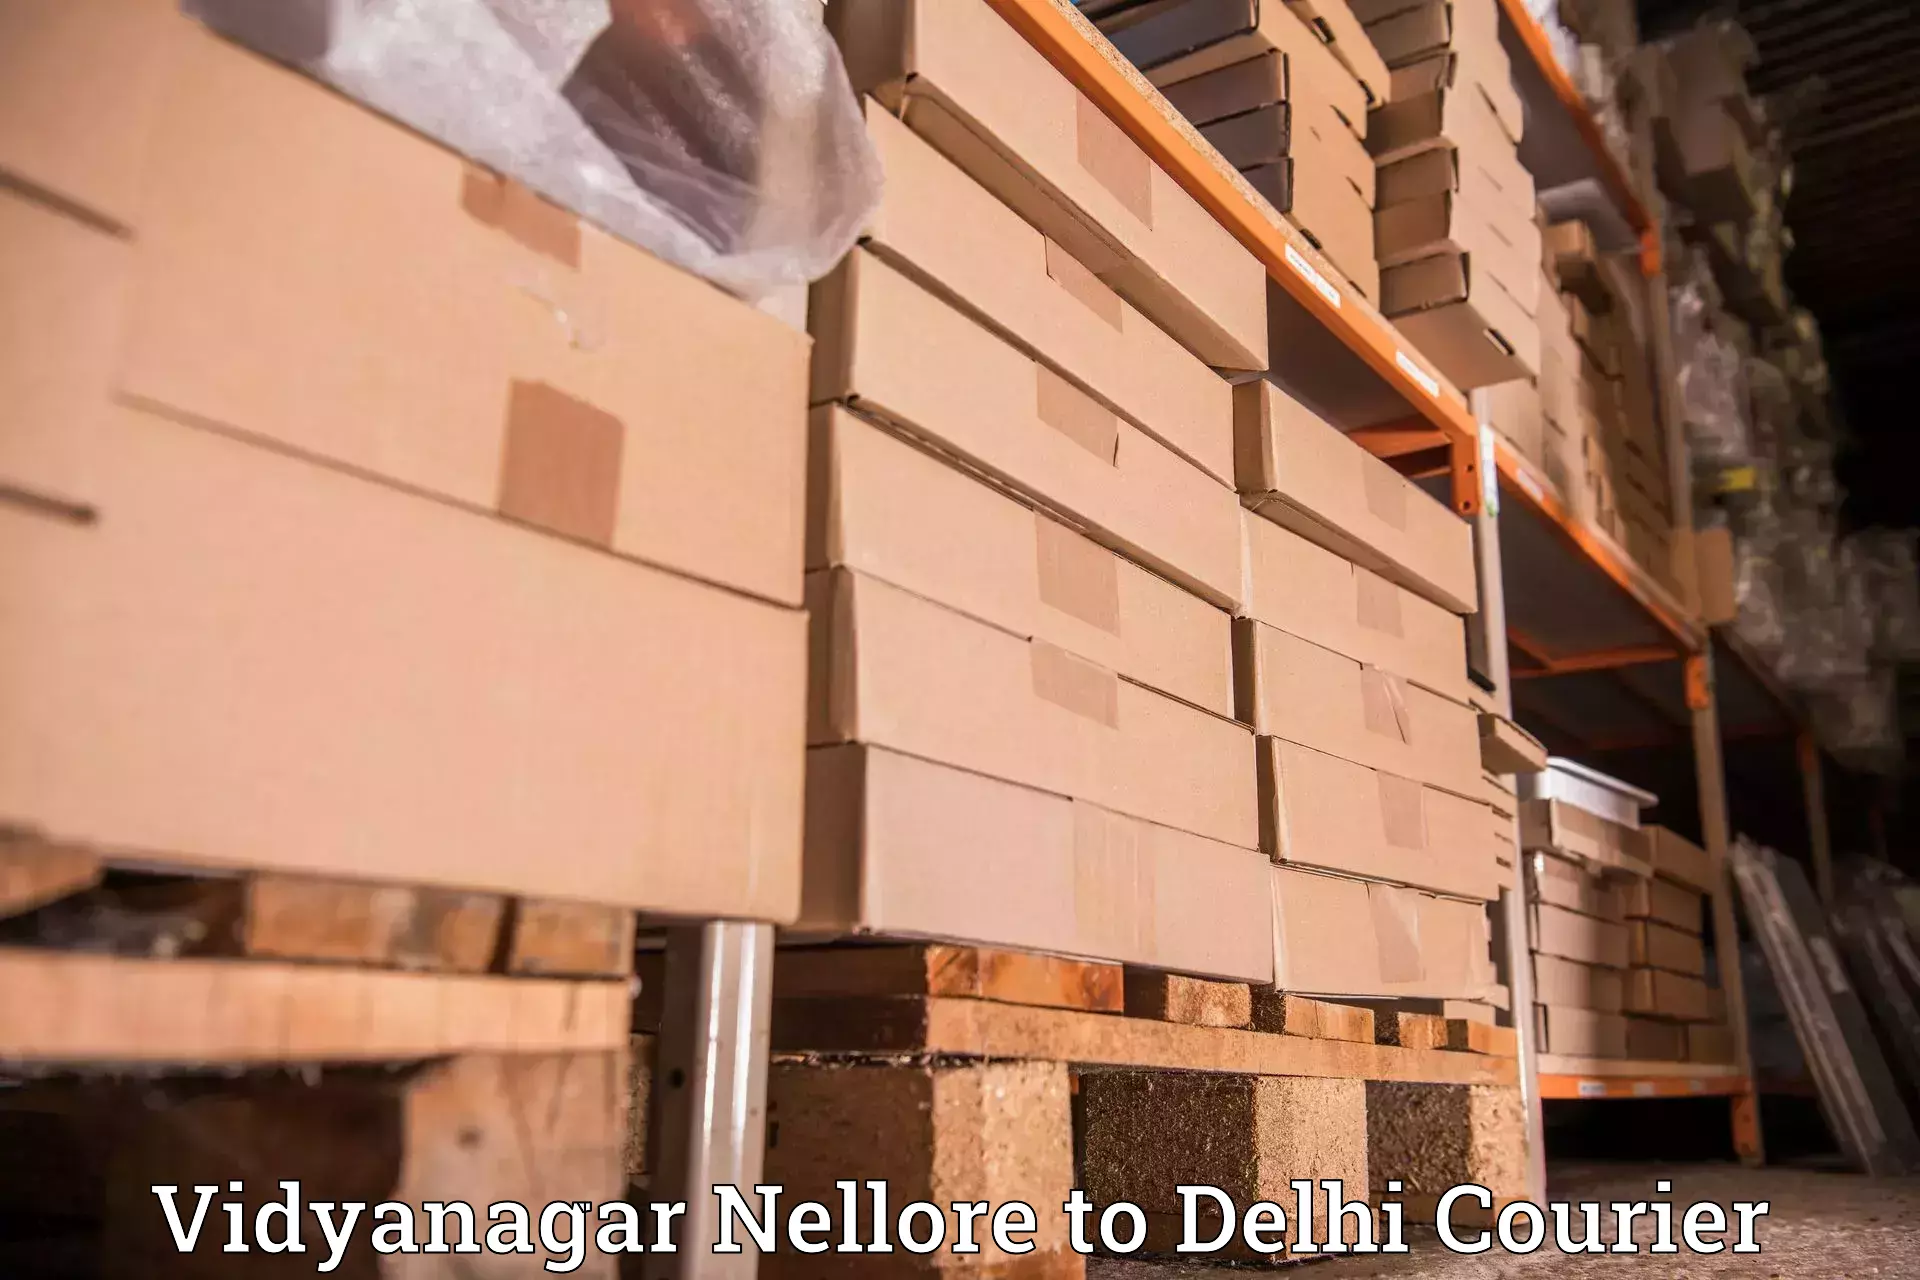 Advanced courier platforms Vidyanagar Nellore to NIT Delhi